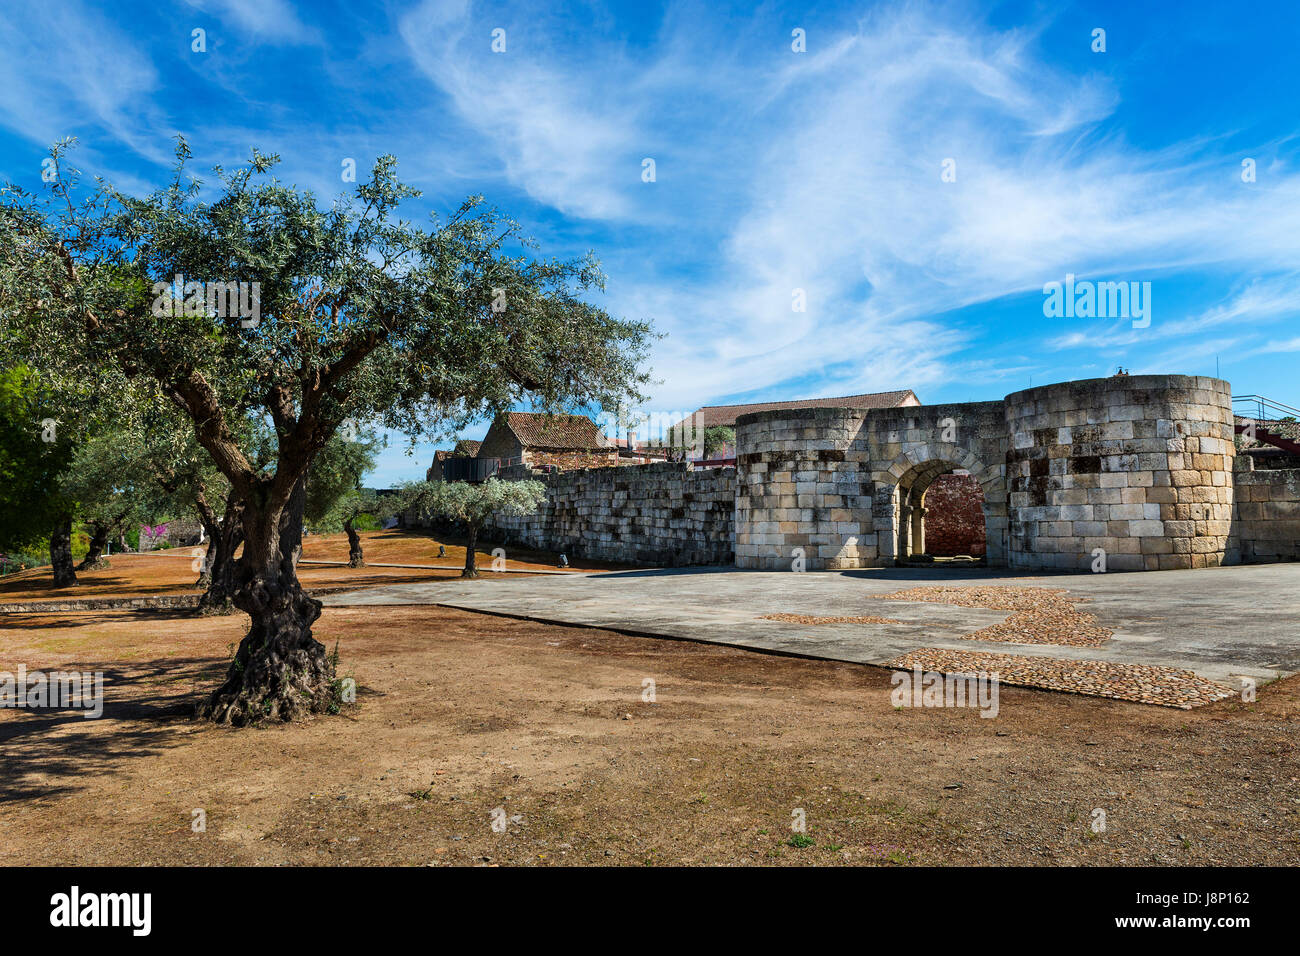 La porta a nord del villaggio storico di Idanha a Velha in Portogallo Foto Stock